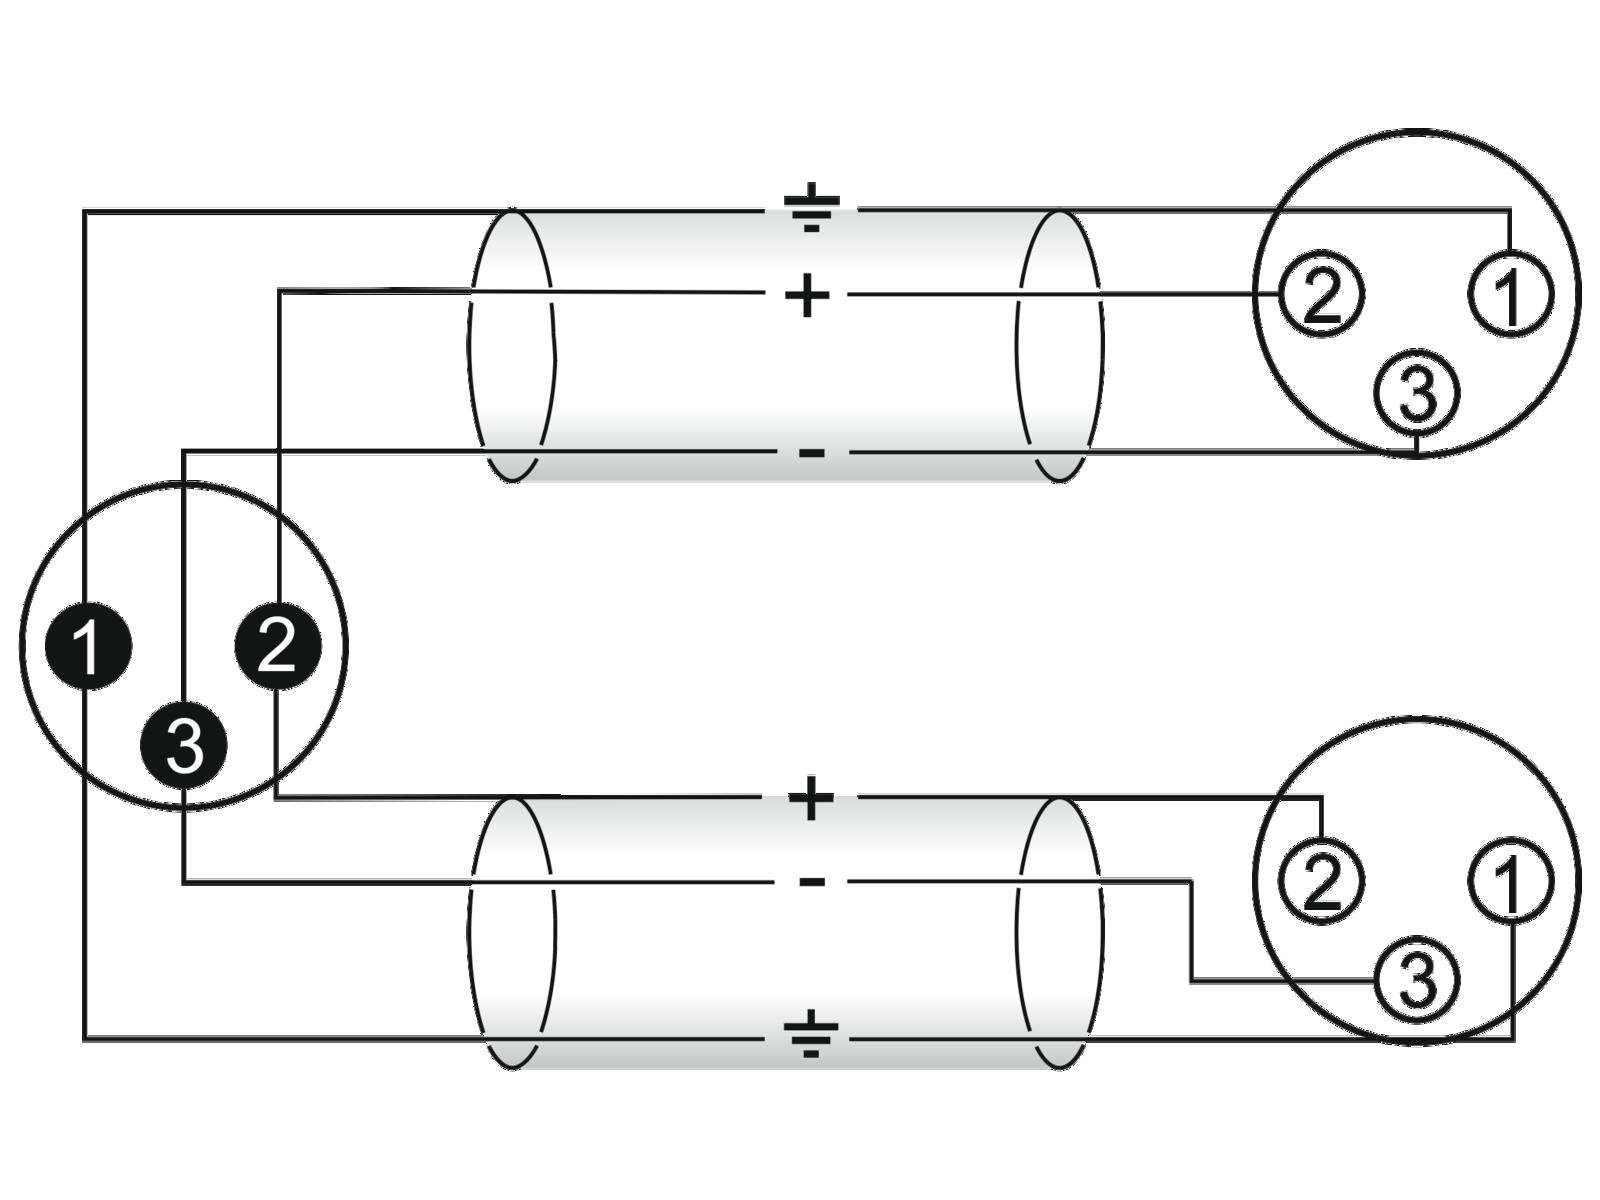 cable adaptateur en Y XLR 3 broches male vers 2 femelles 1,50m